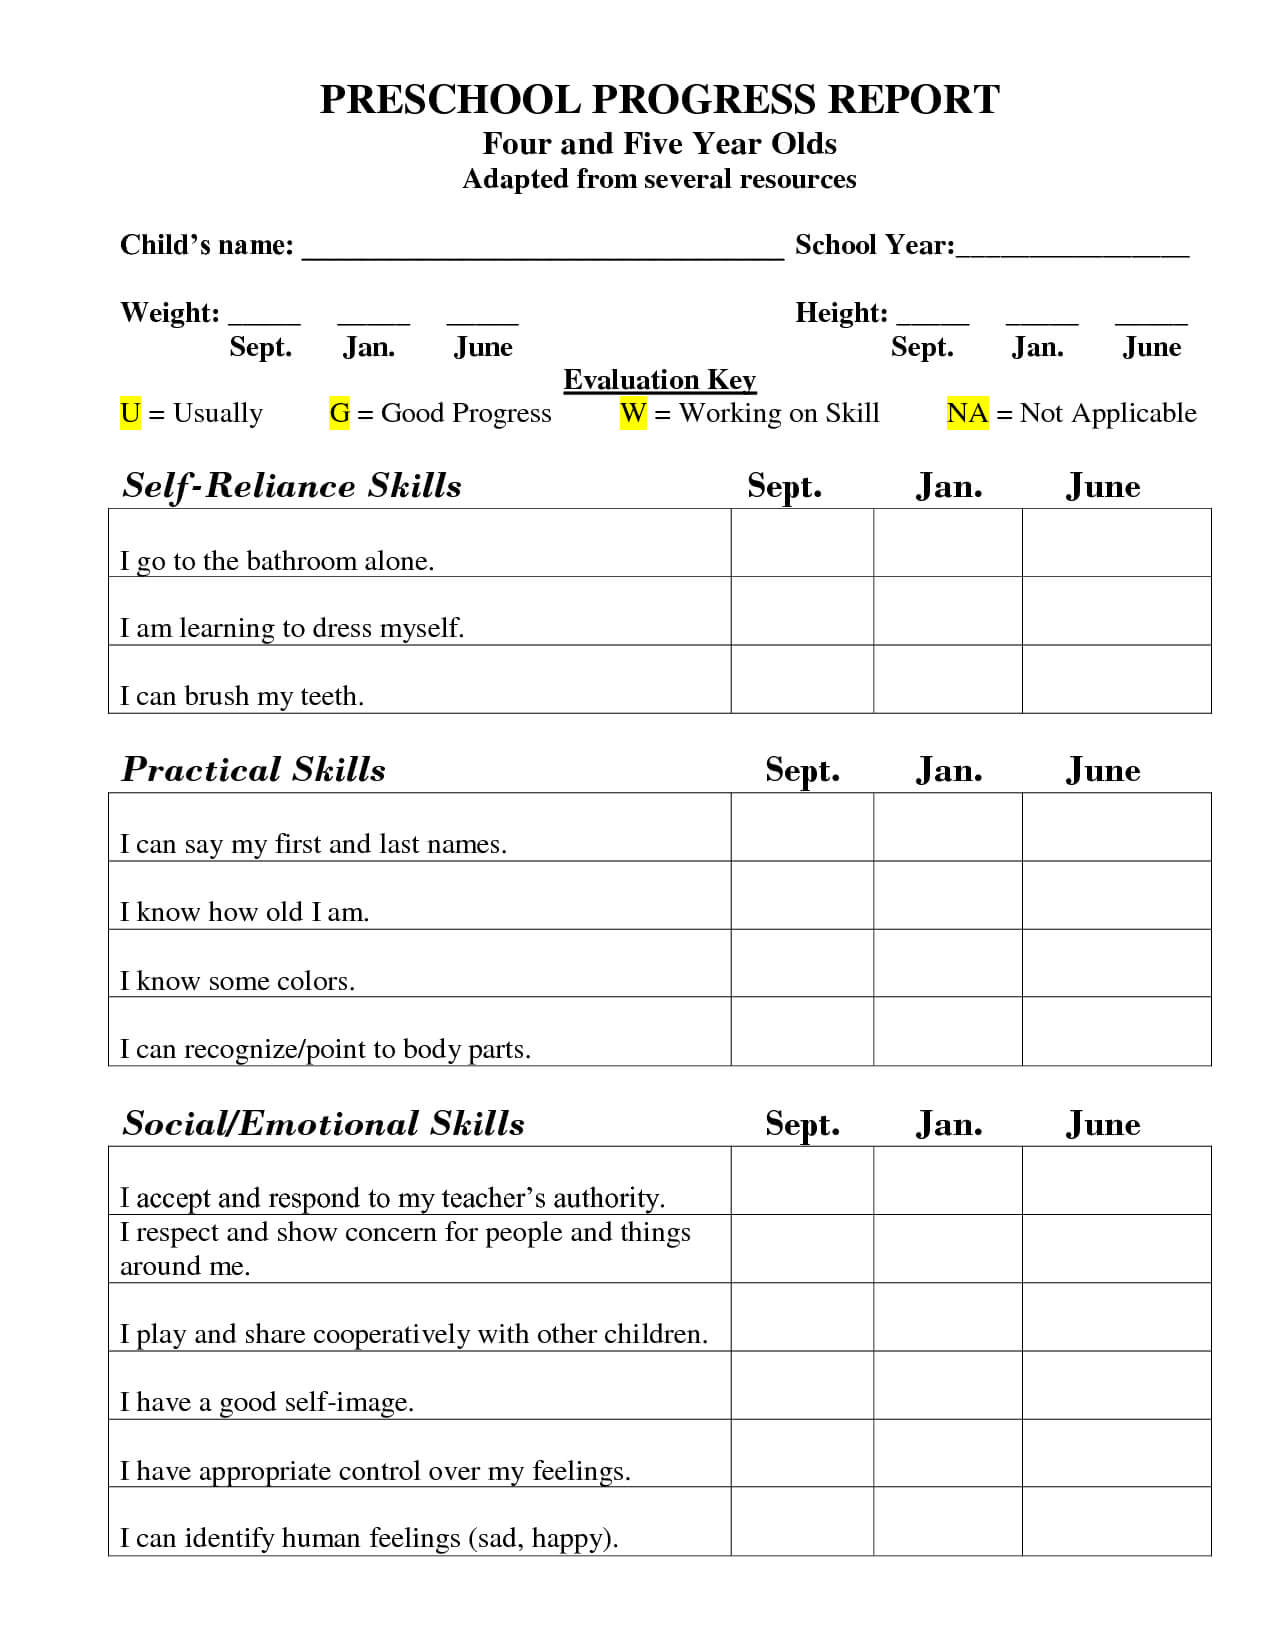 Preschool Progress Report Template | School Report Card With Preschool Progress Report Template